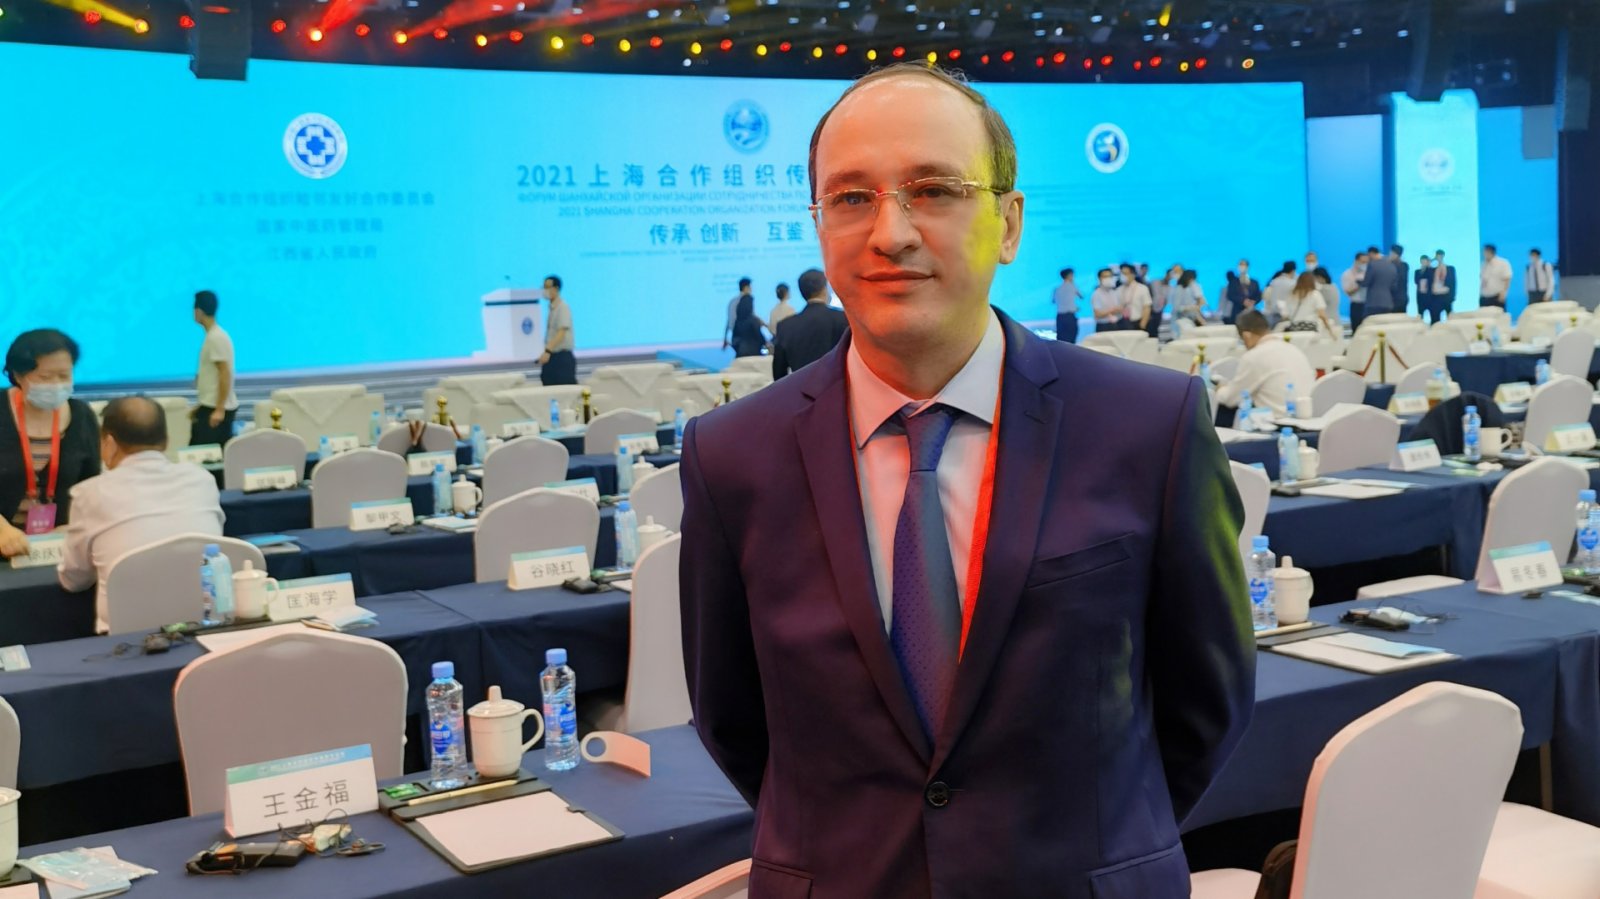 烏茲別克駐華公使冀中烏傳統醫學中心成為落實國家元首倡議的典範